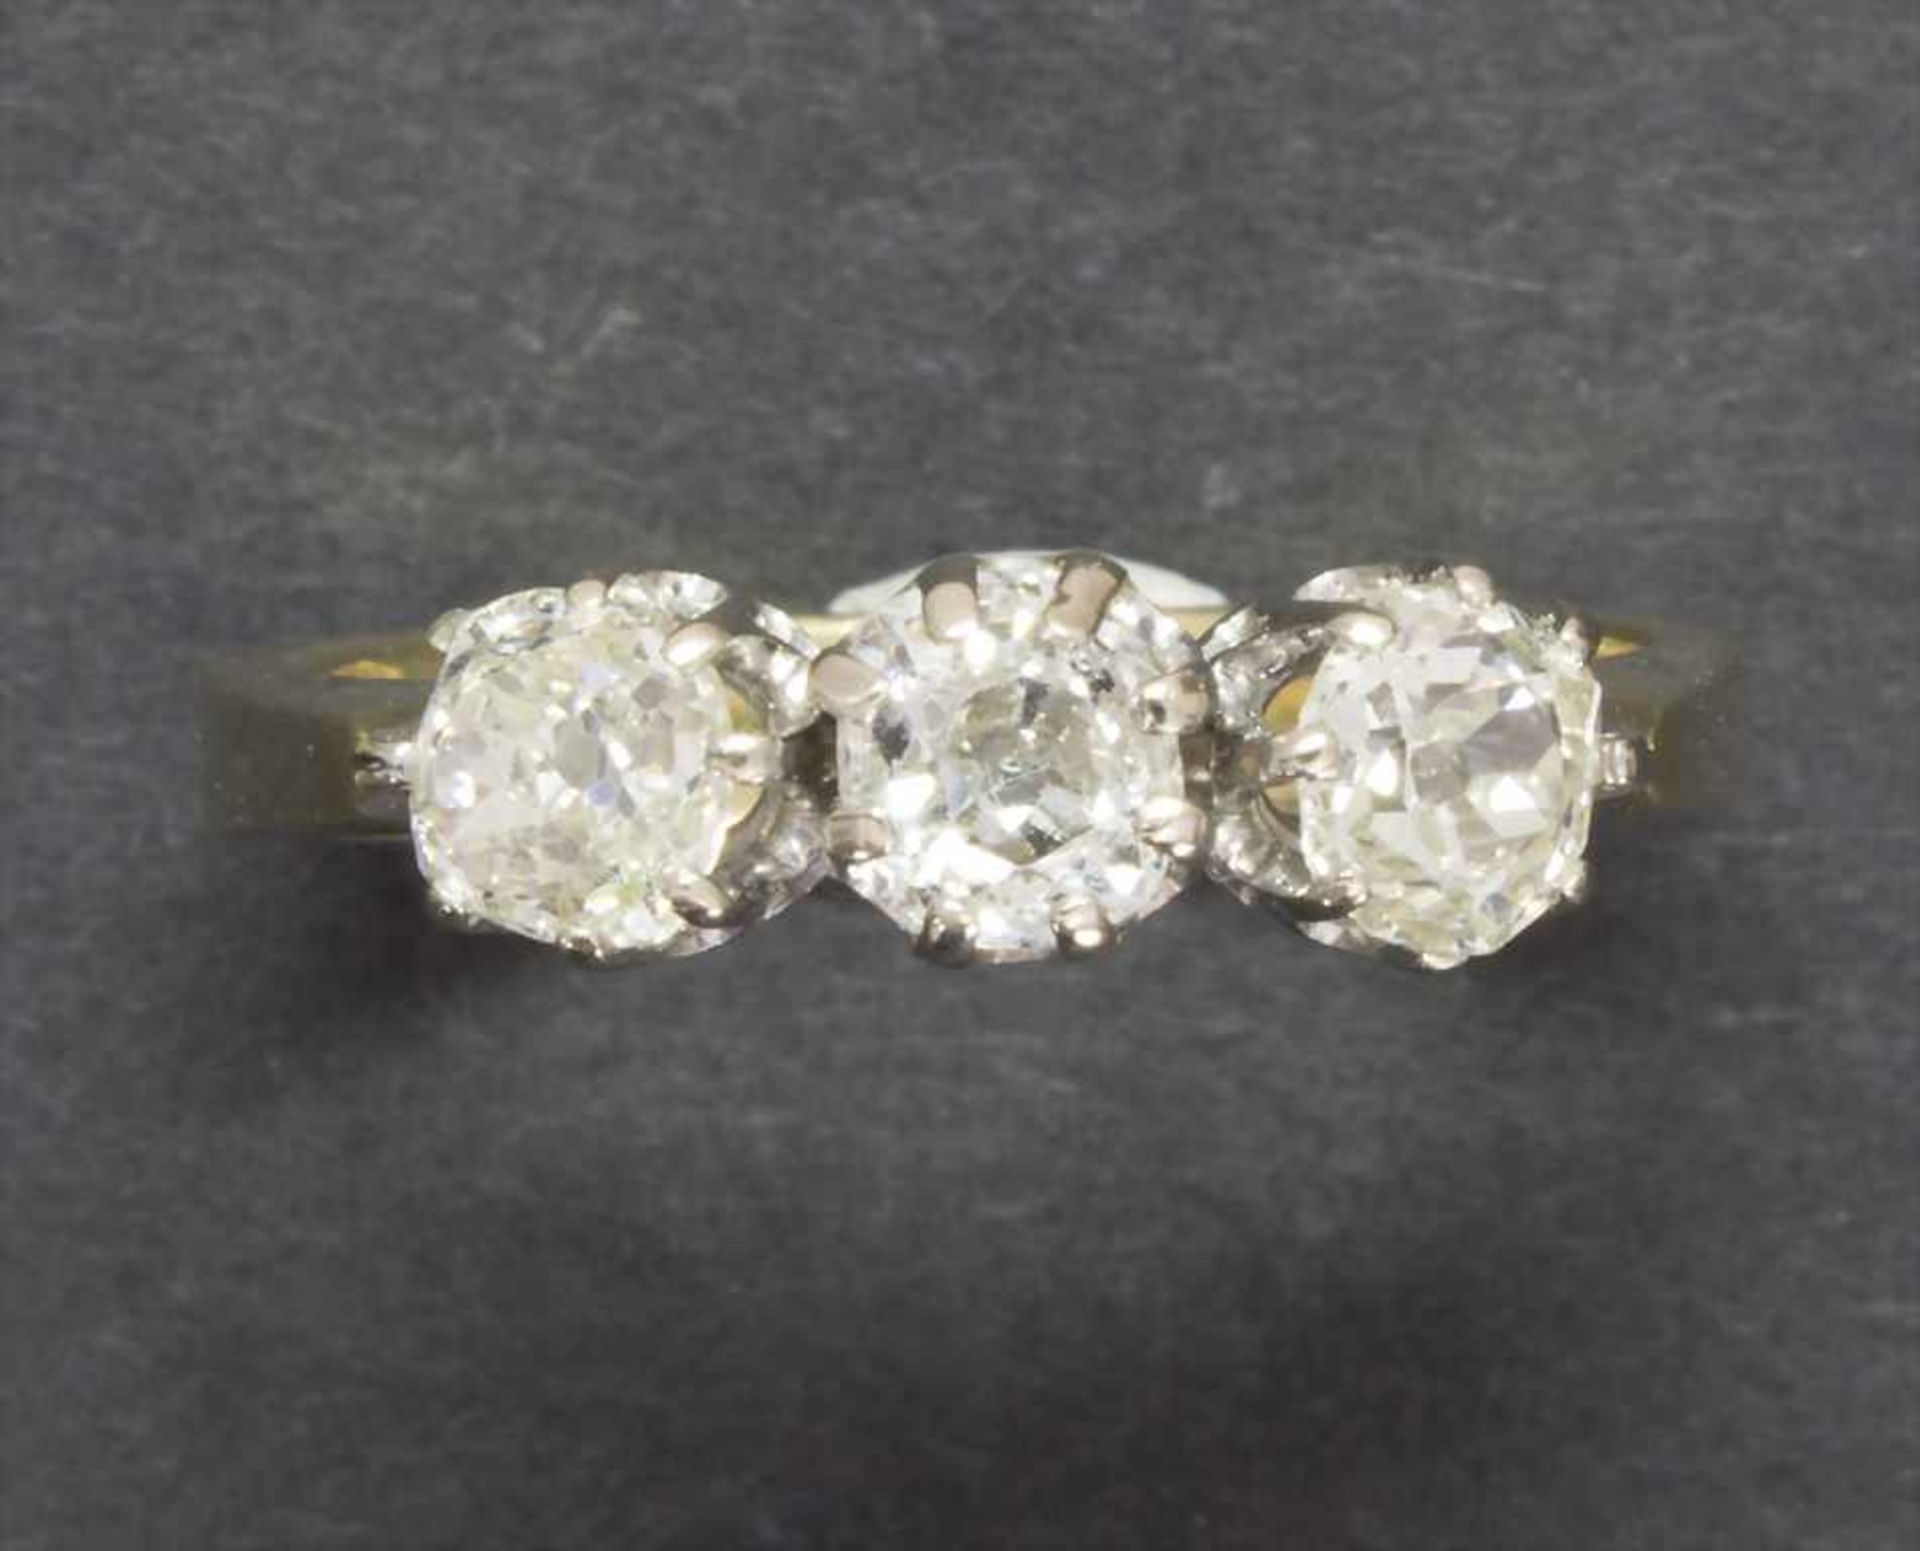 Damenring mit Diamanten / A ladies ring with diamonds - Image 3 of 4